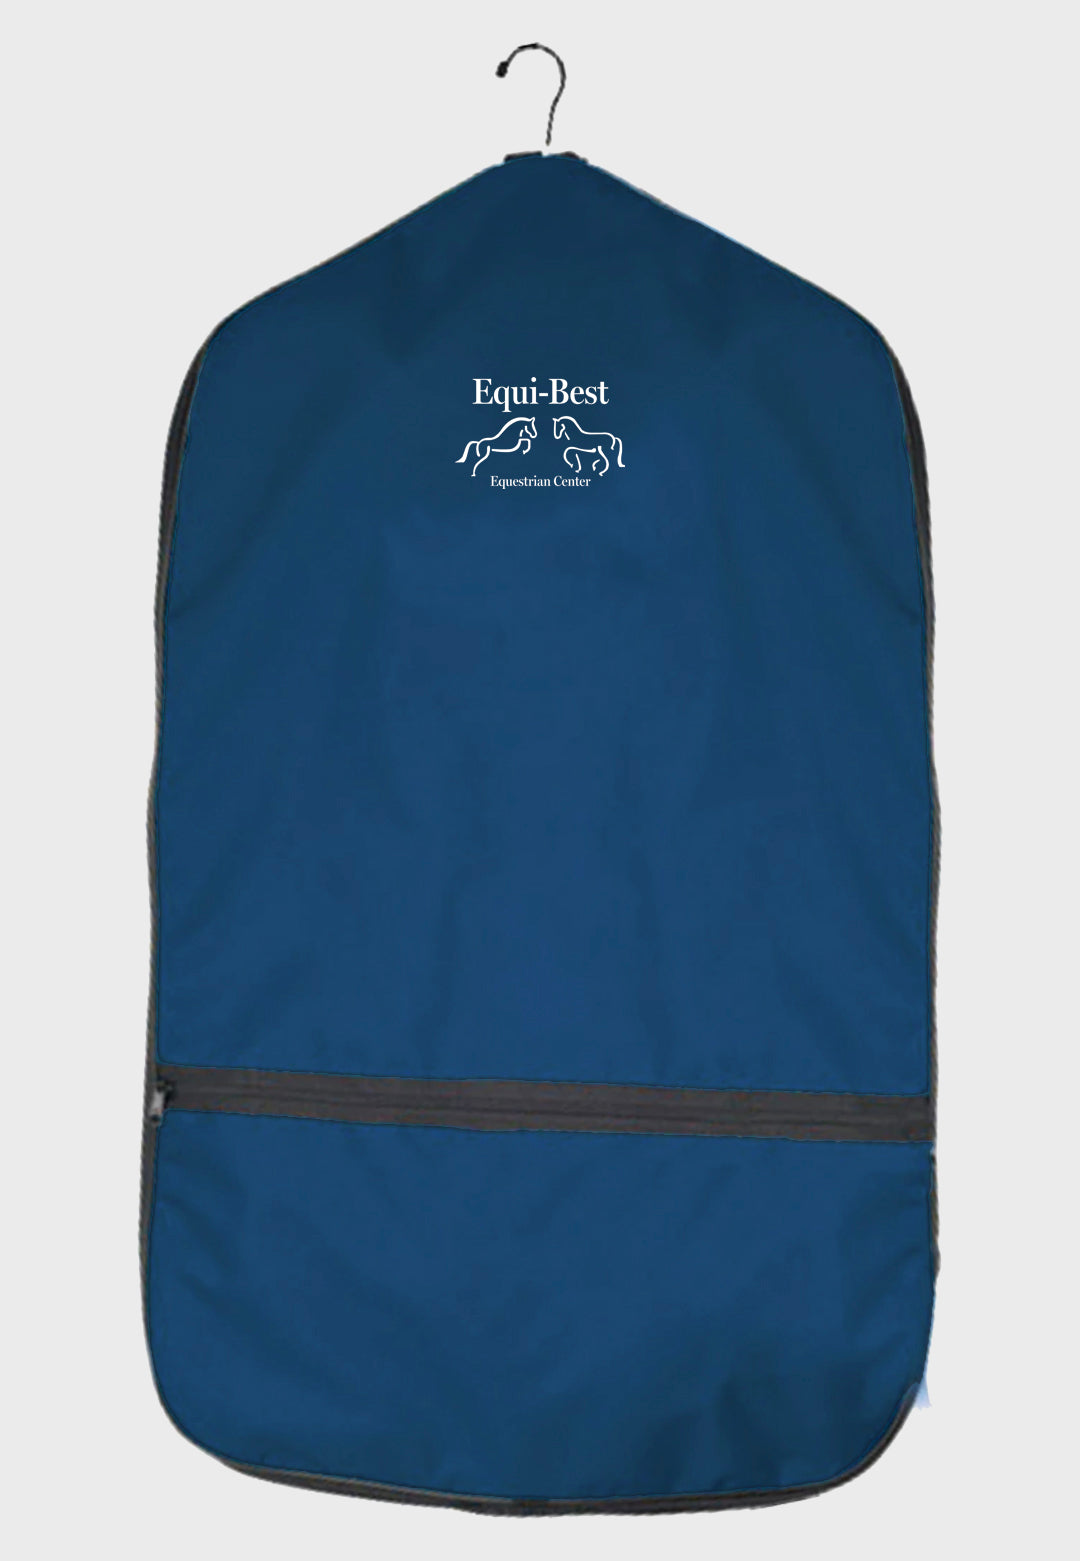 Equi-Best World Class Equine Garment Bag - Original and XL